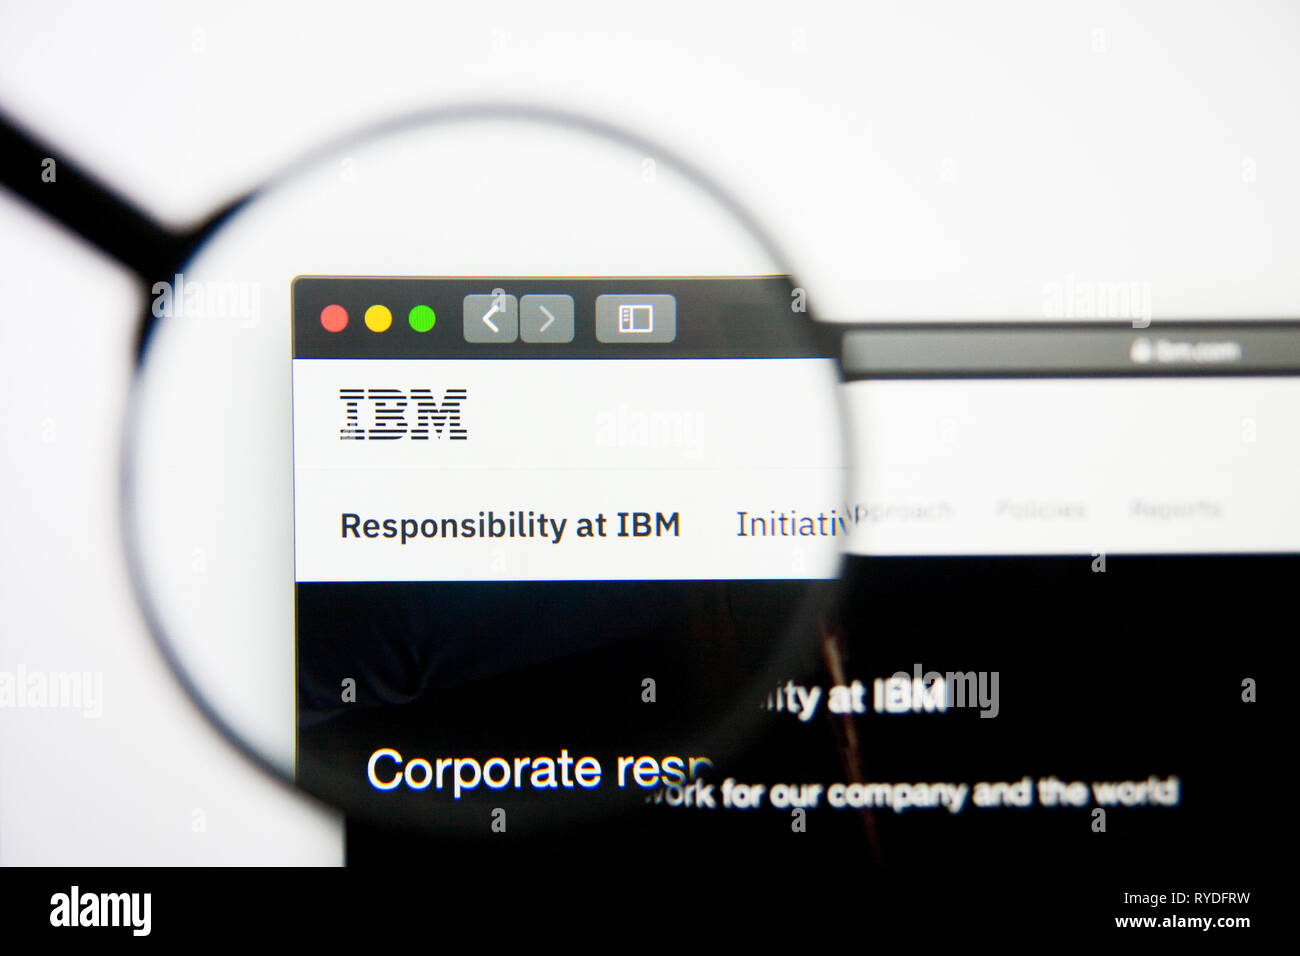 Los Angeles, Californie, USA - 5 mars 2019 : IBM accueil du site. IBM logo visible sur l'écran d'affichage, de rédaction d'illustration Banque D'Images